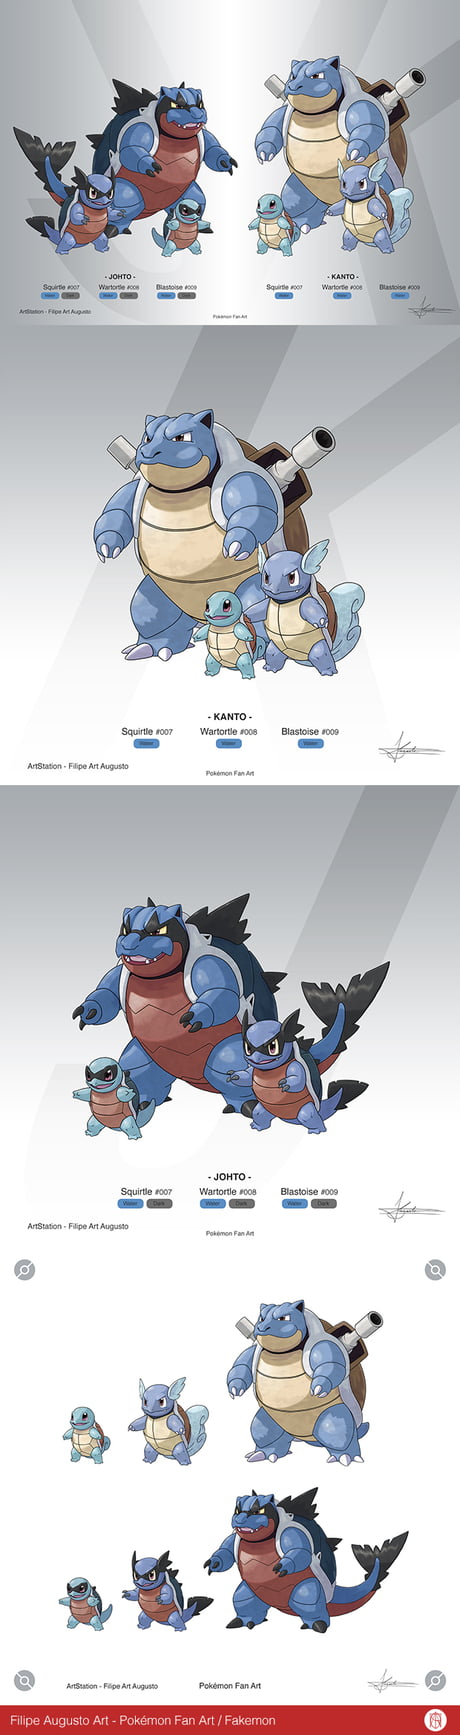 Fakemon - Kanto Starters and Johto Forms - What do you think? - Pokémon